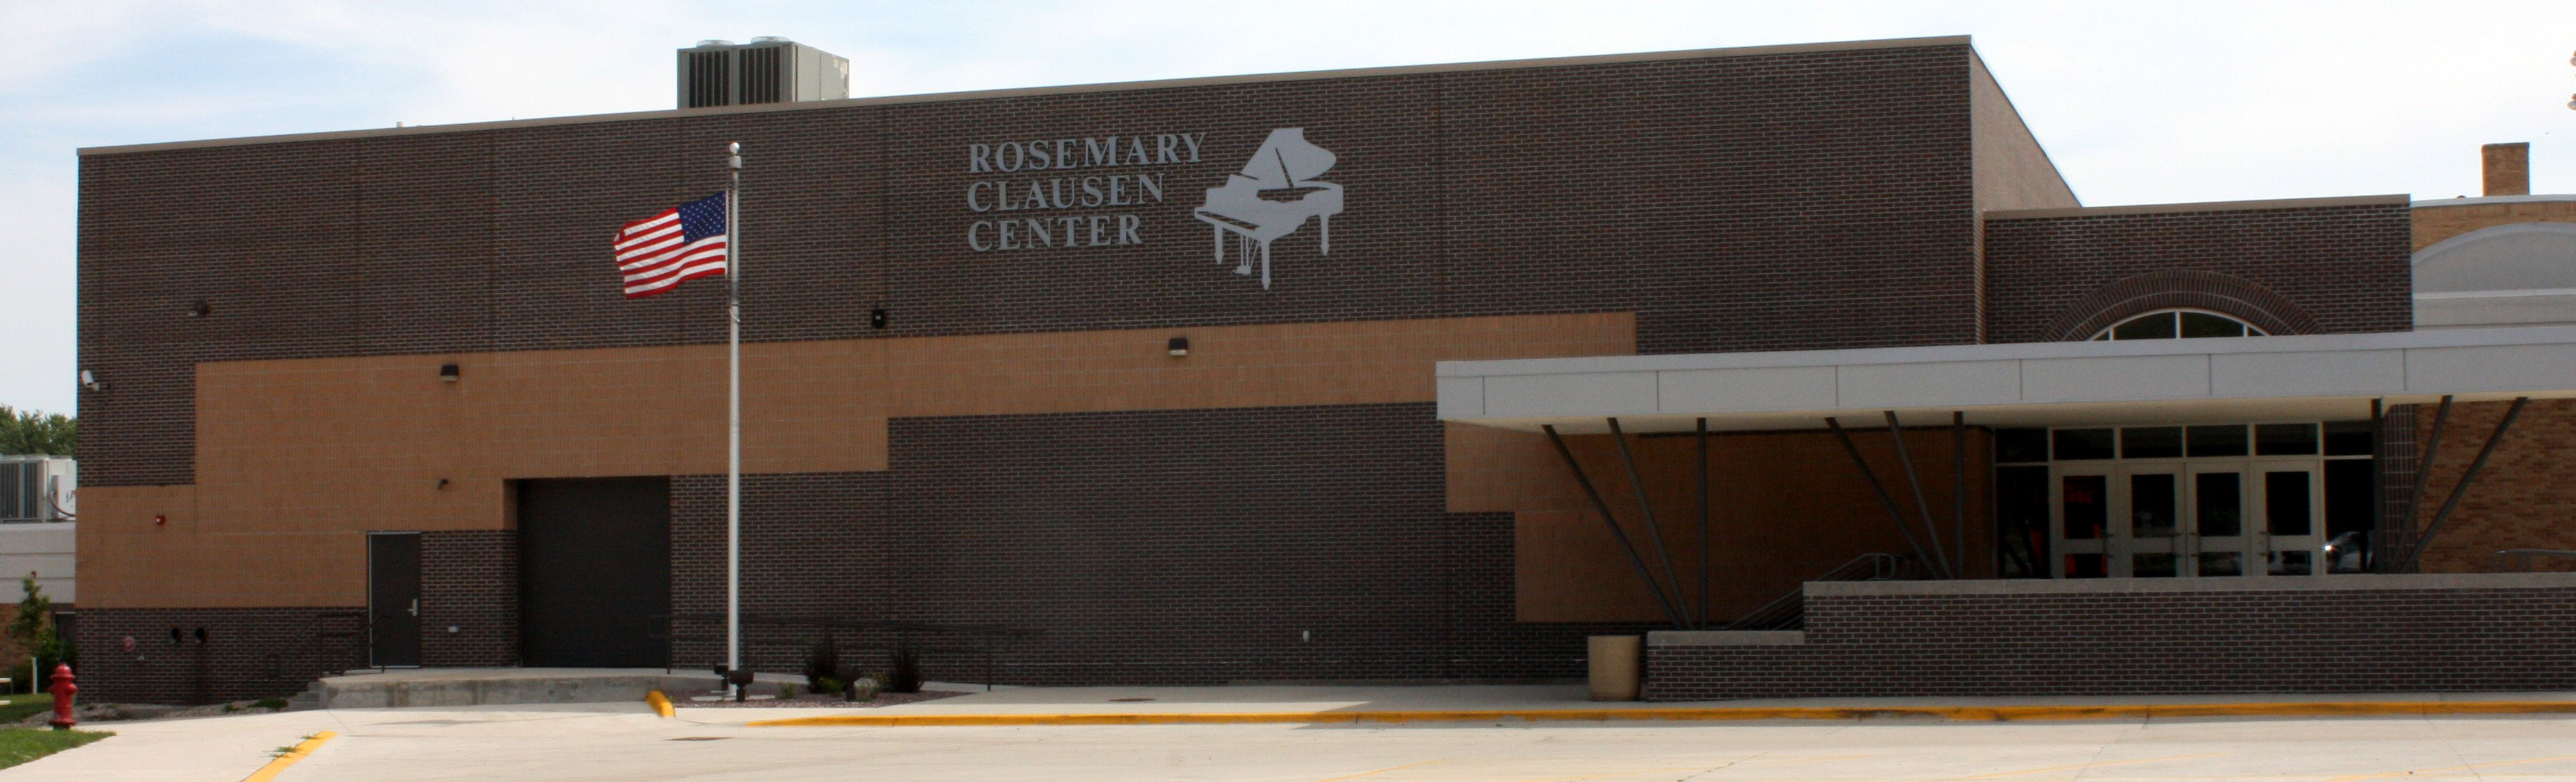 Rosemary Clausen Center entrance